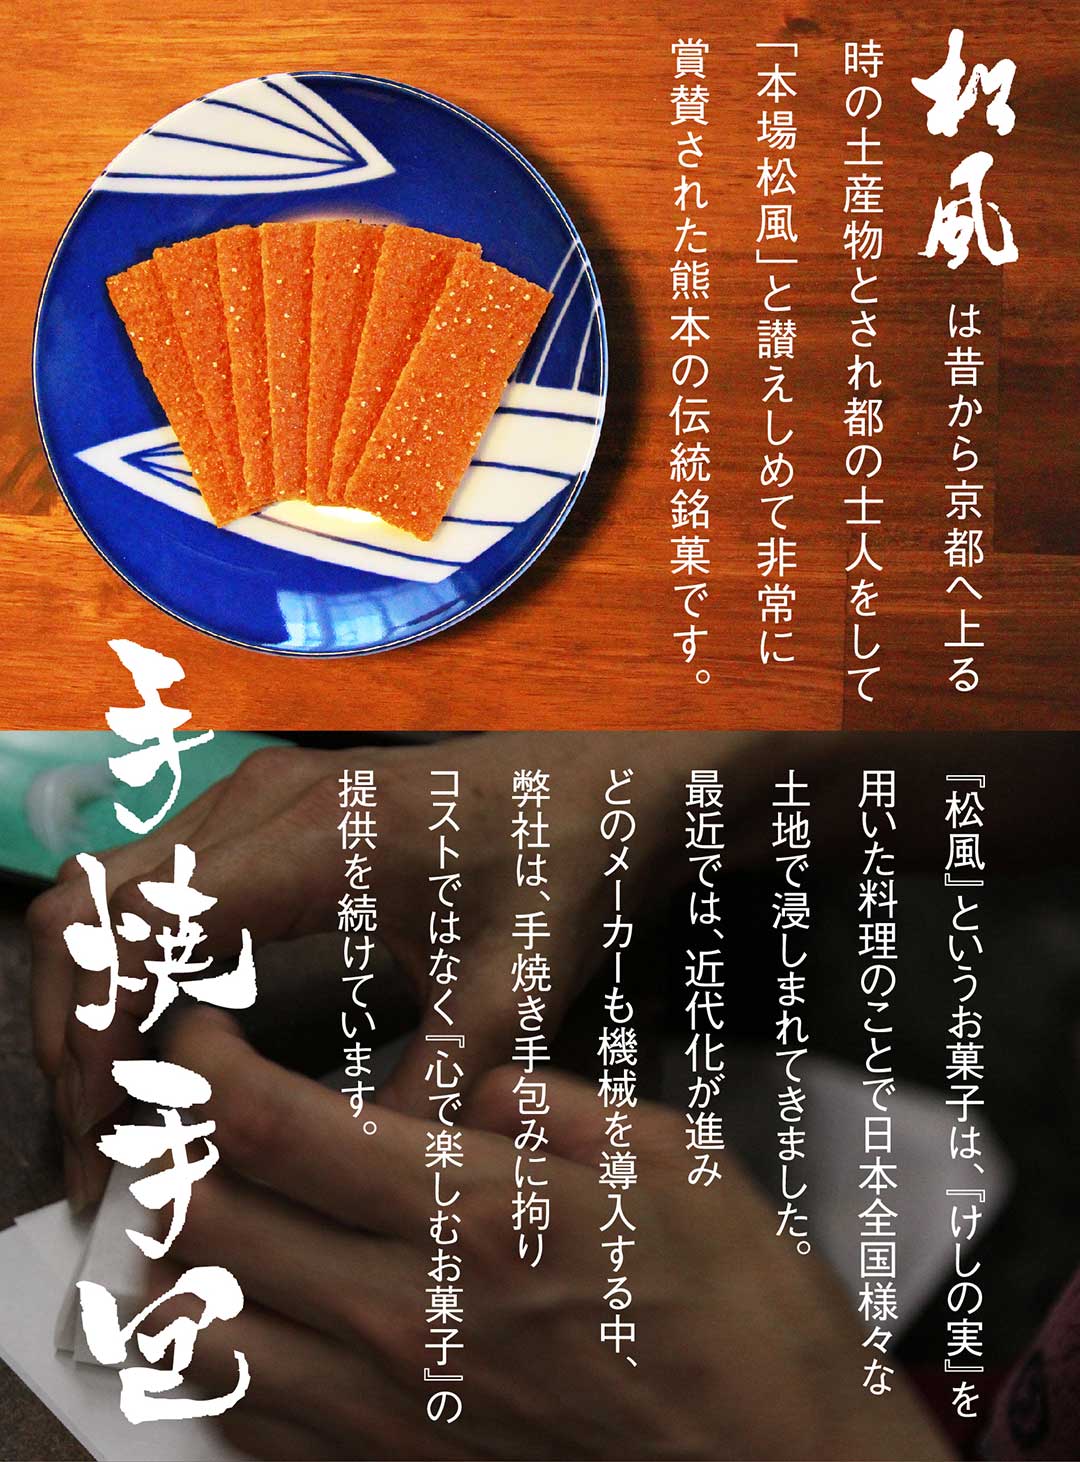 日本刀のお菓子、延寿松風